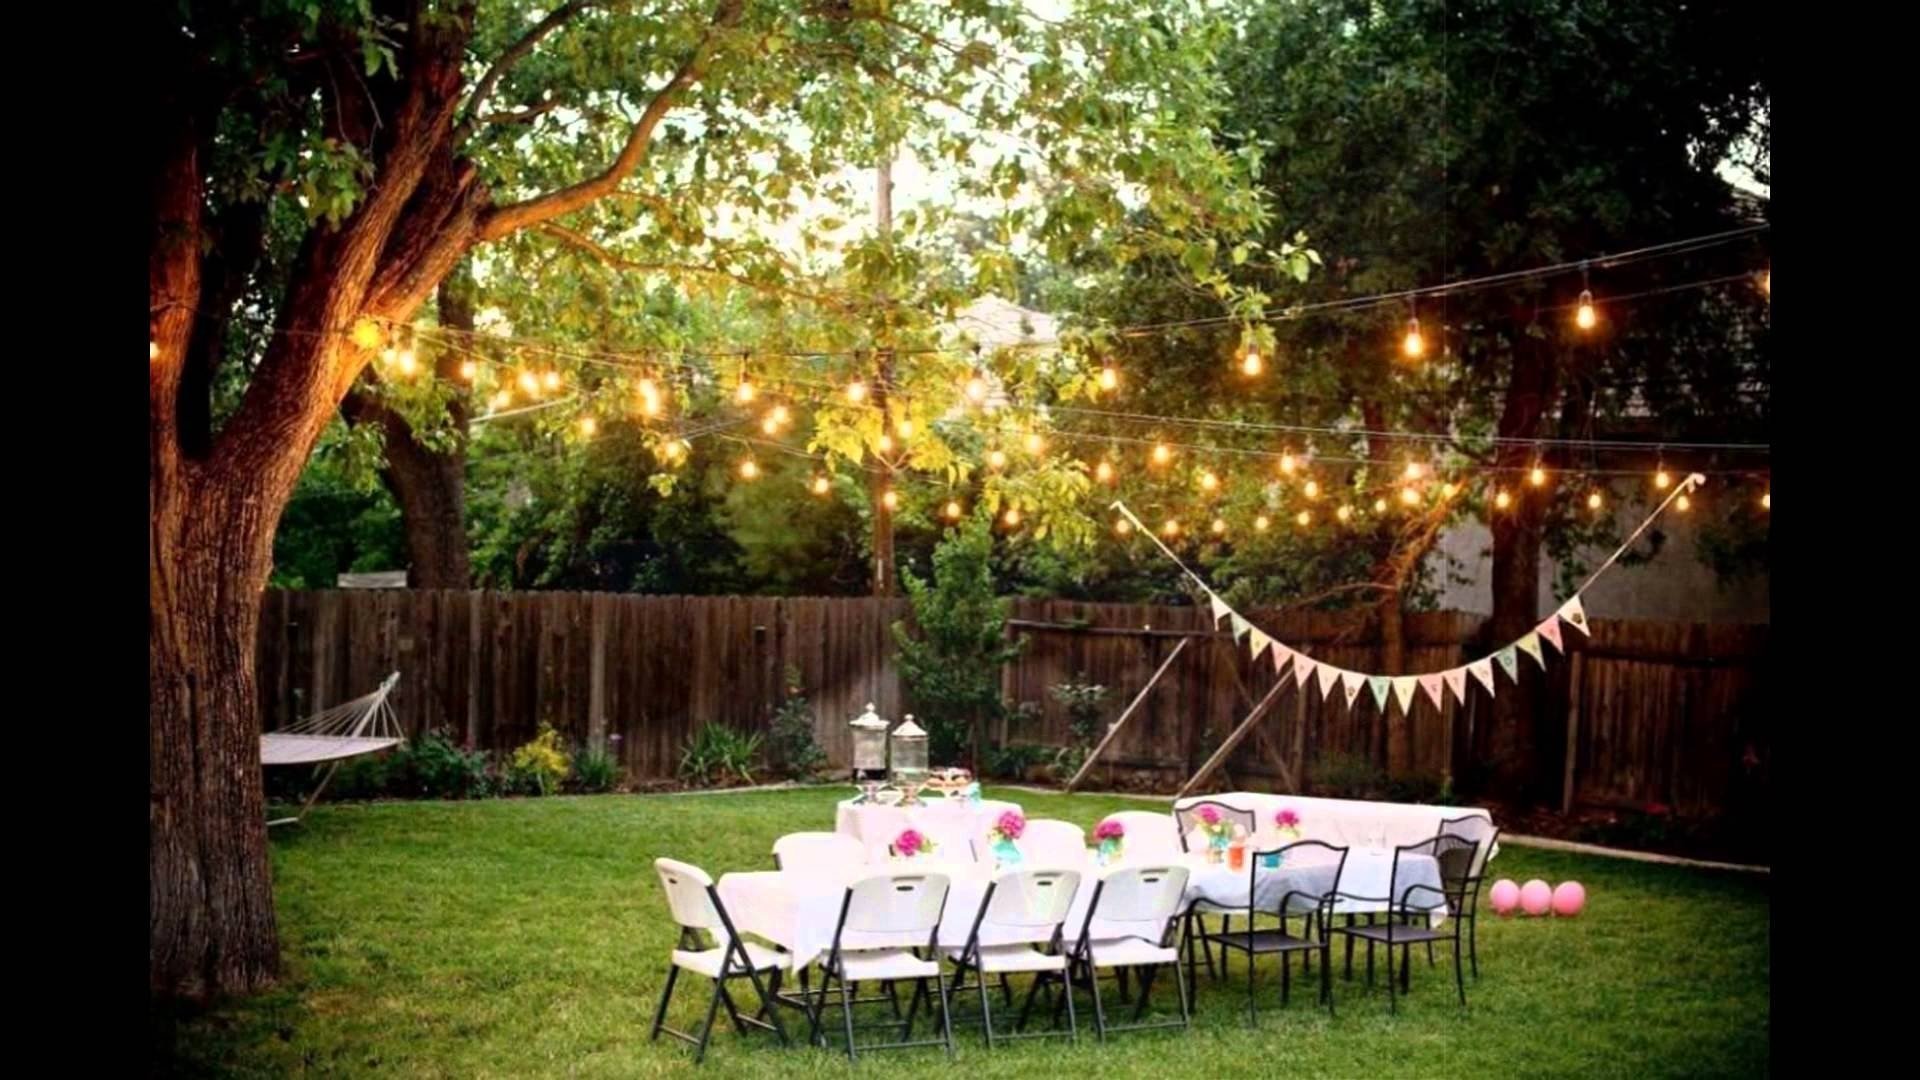 10 Cute Backyard Wedding Decoration Ideas On A Budget backyard weddings on a budget youtube 3 2022